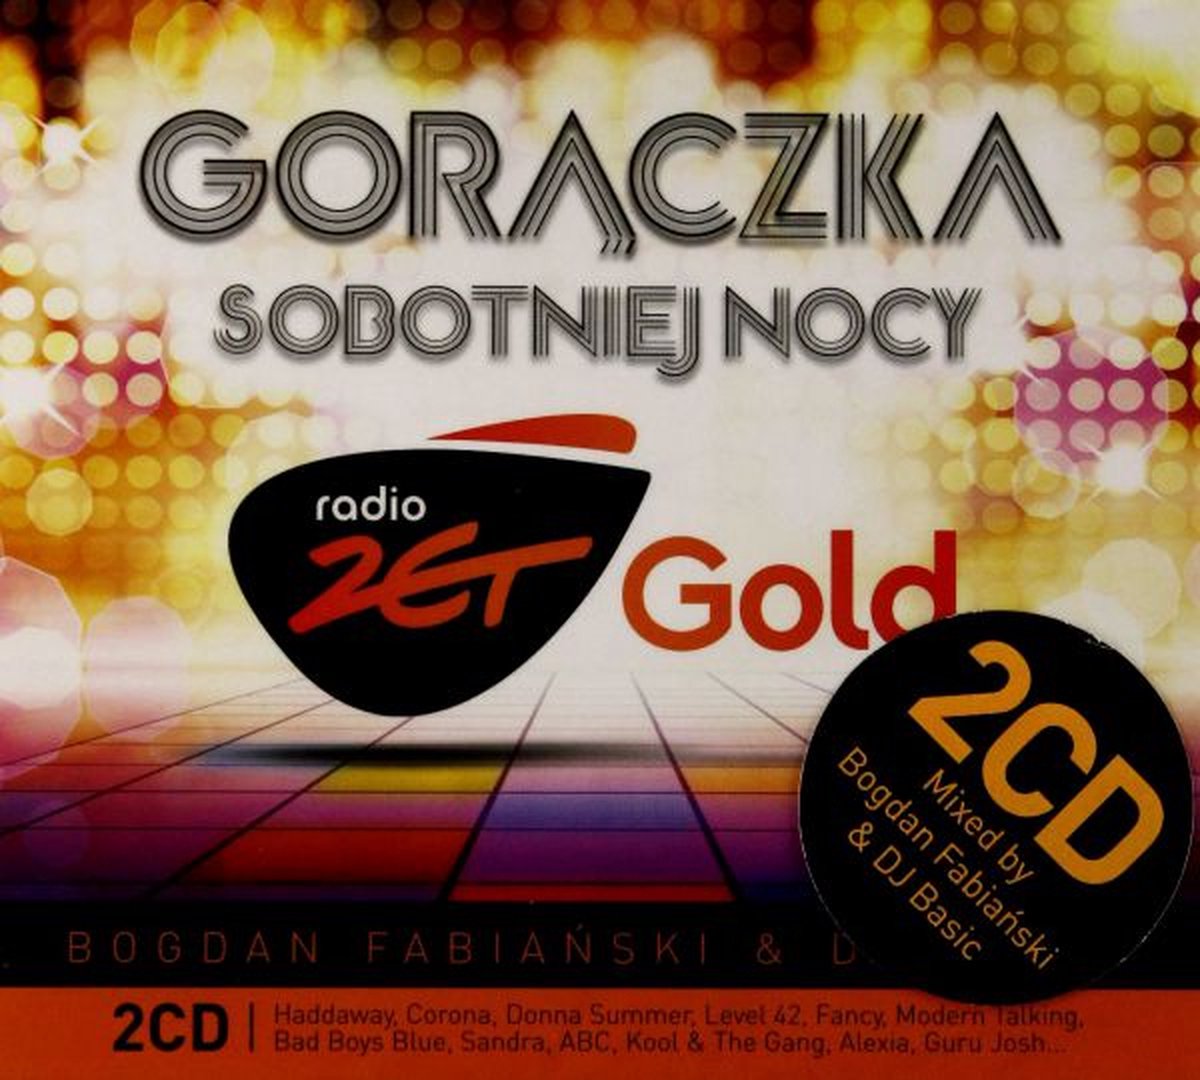 Radio Zet Gold: Gorączka Sobotniej Nocy [2CD] - Romina Power